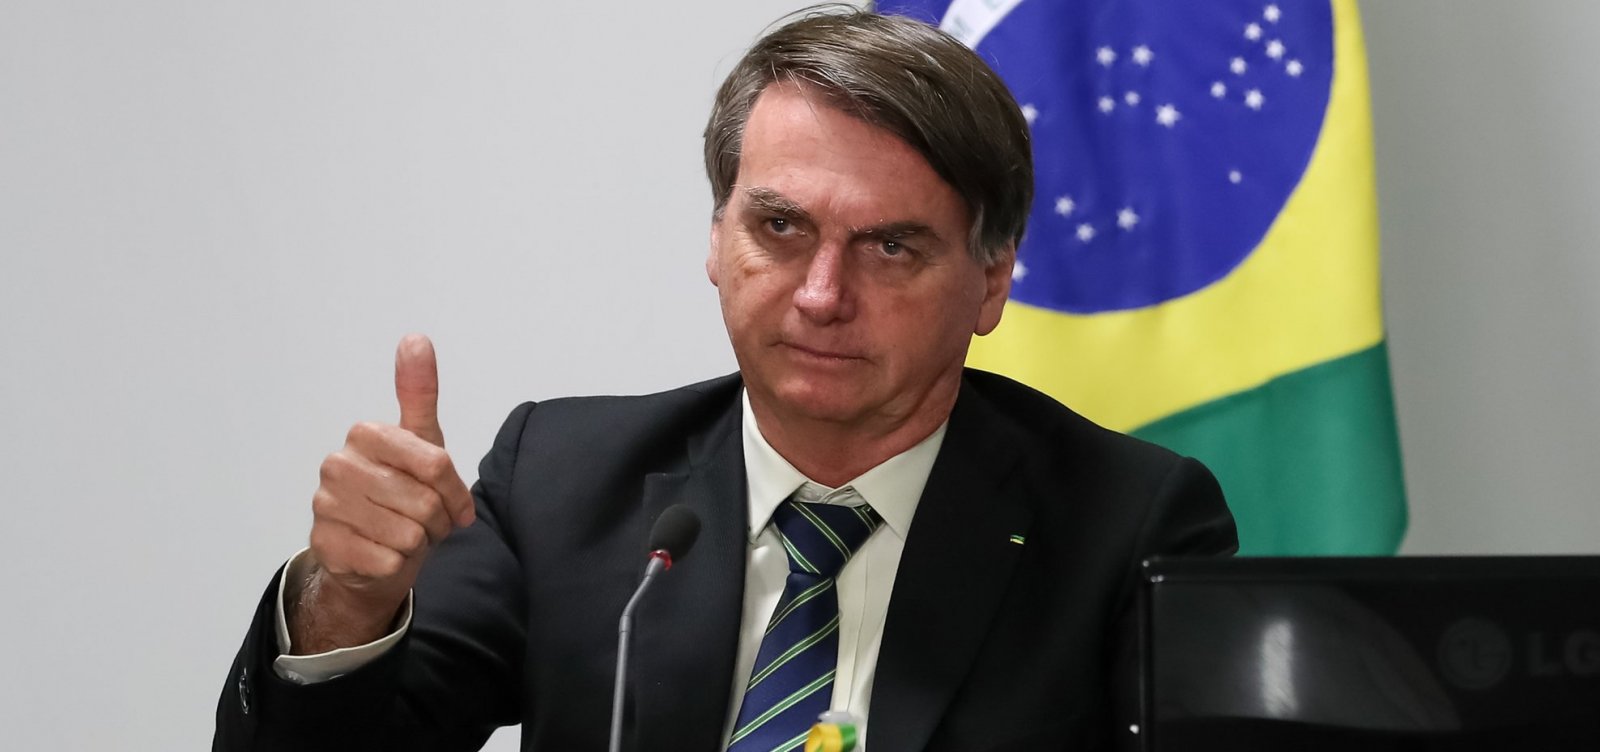 [Índice de reprovação da aproximação de Bolsonaro com Centrão chega a 67%]